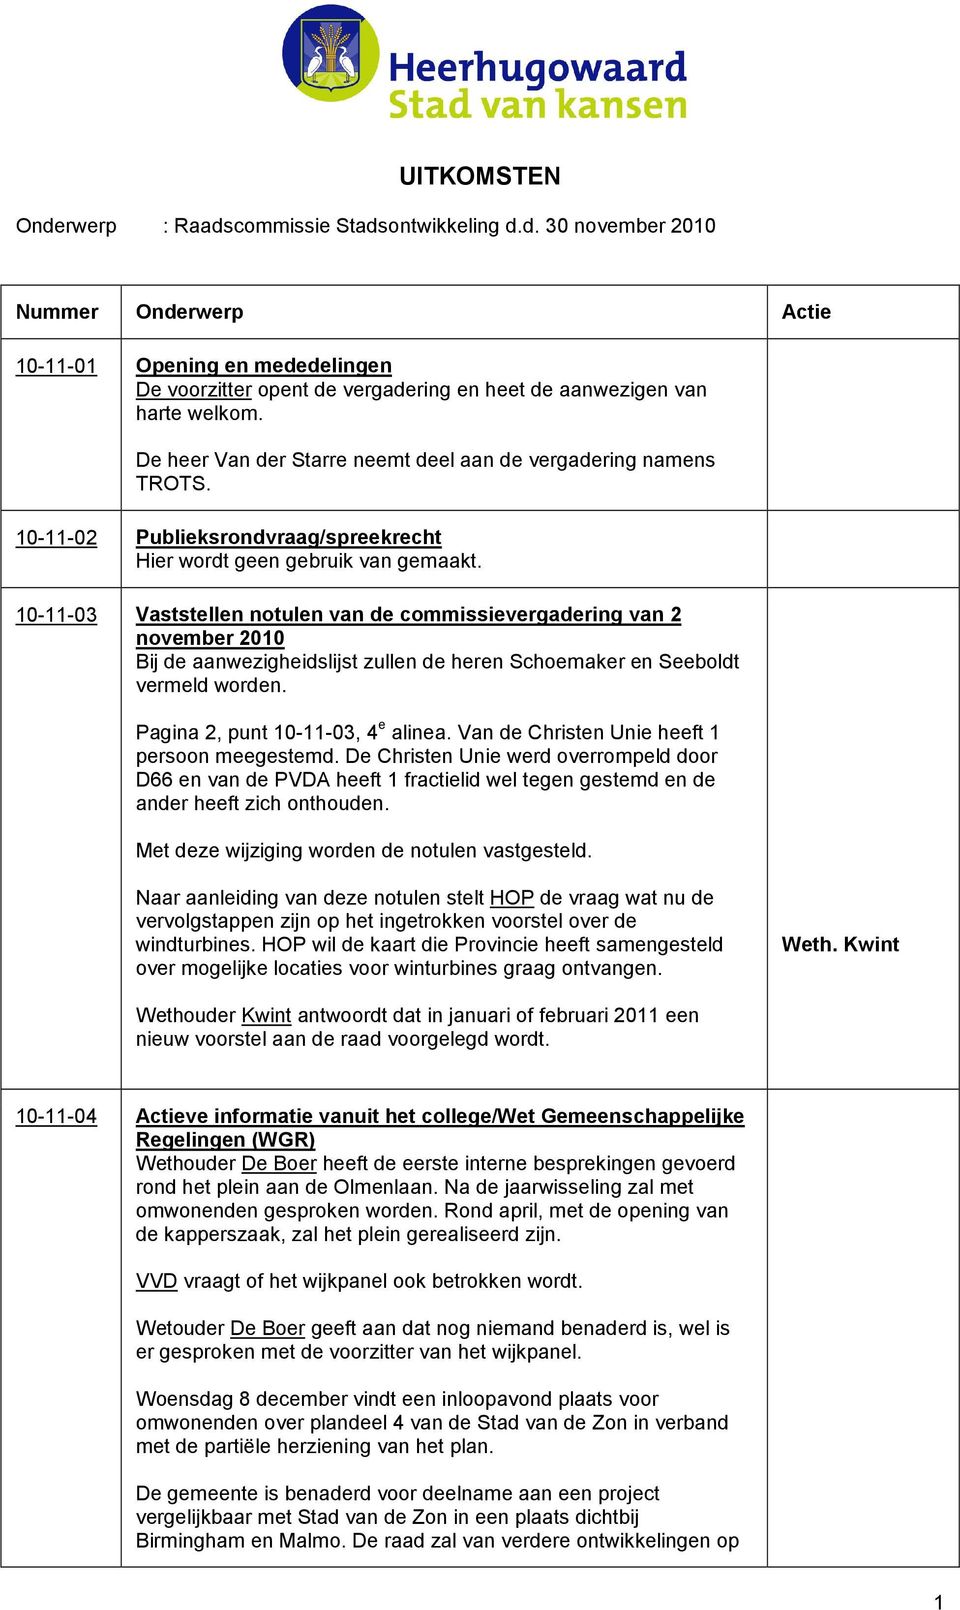 10-11-03 Vaststellen notulen van de commissievergadering van 2 november 2010 Bij de aanwezigheidslijst zullen de heren Schoemaker en Seeboldt vermeld worden. Pagina 2, punt 10-11-03, 4 e alinea.